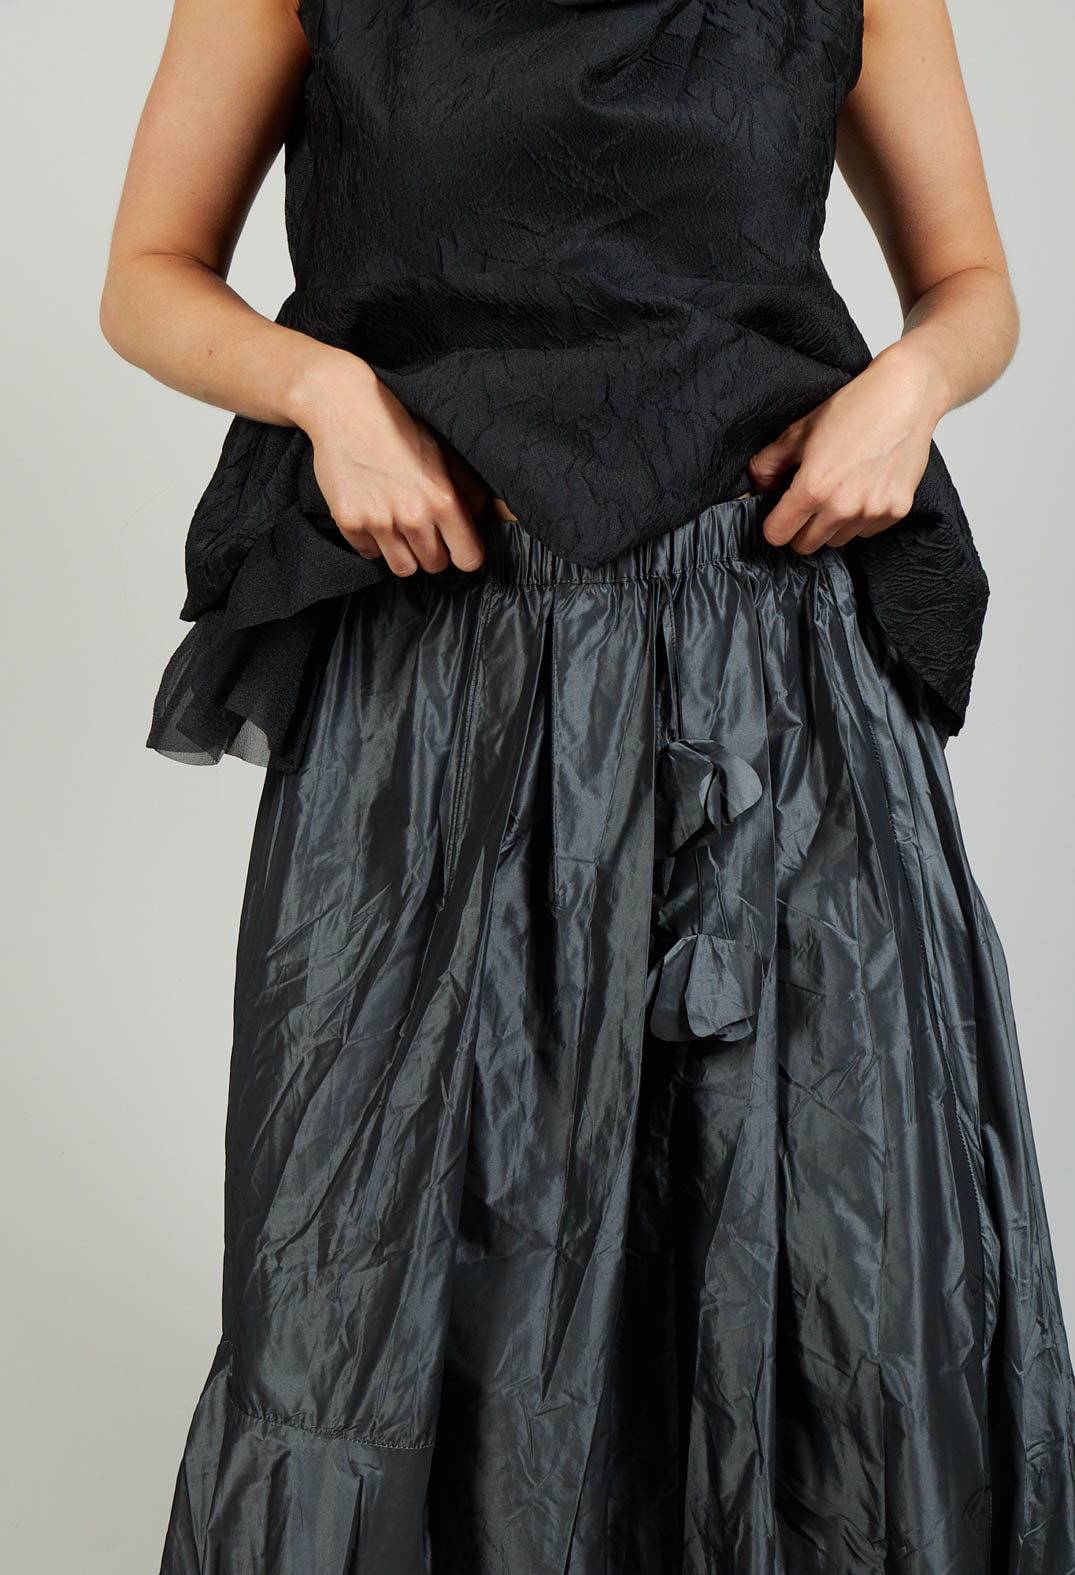 Dipped Hemline Skirt in Grey